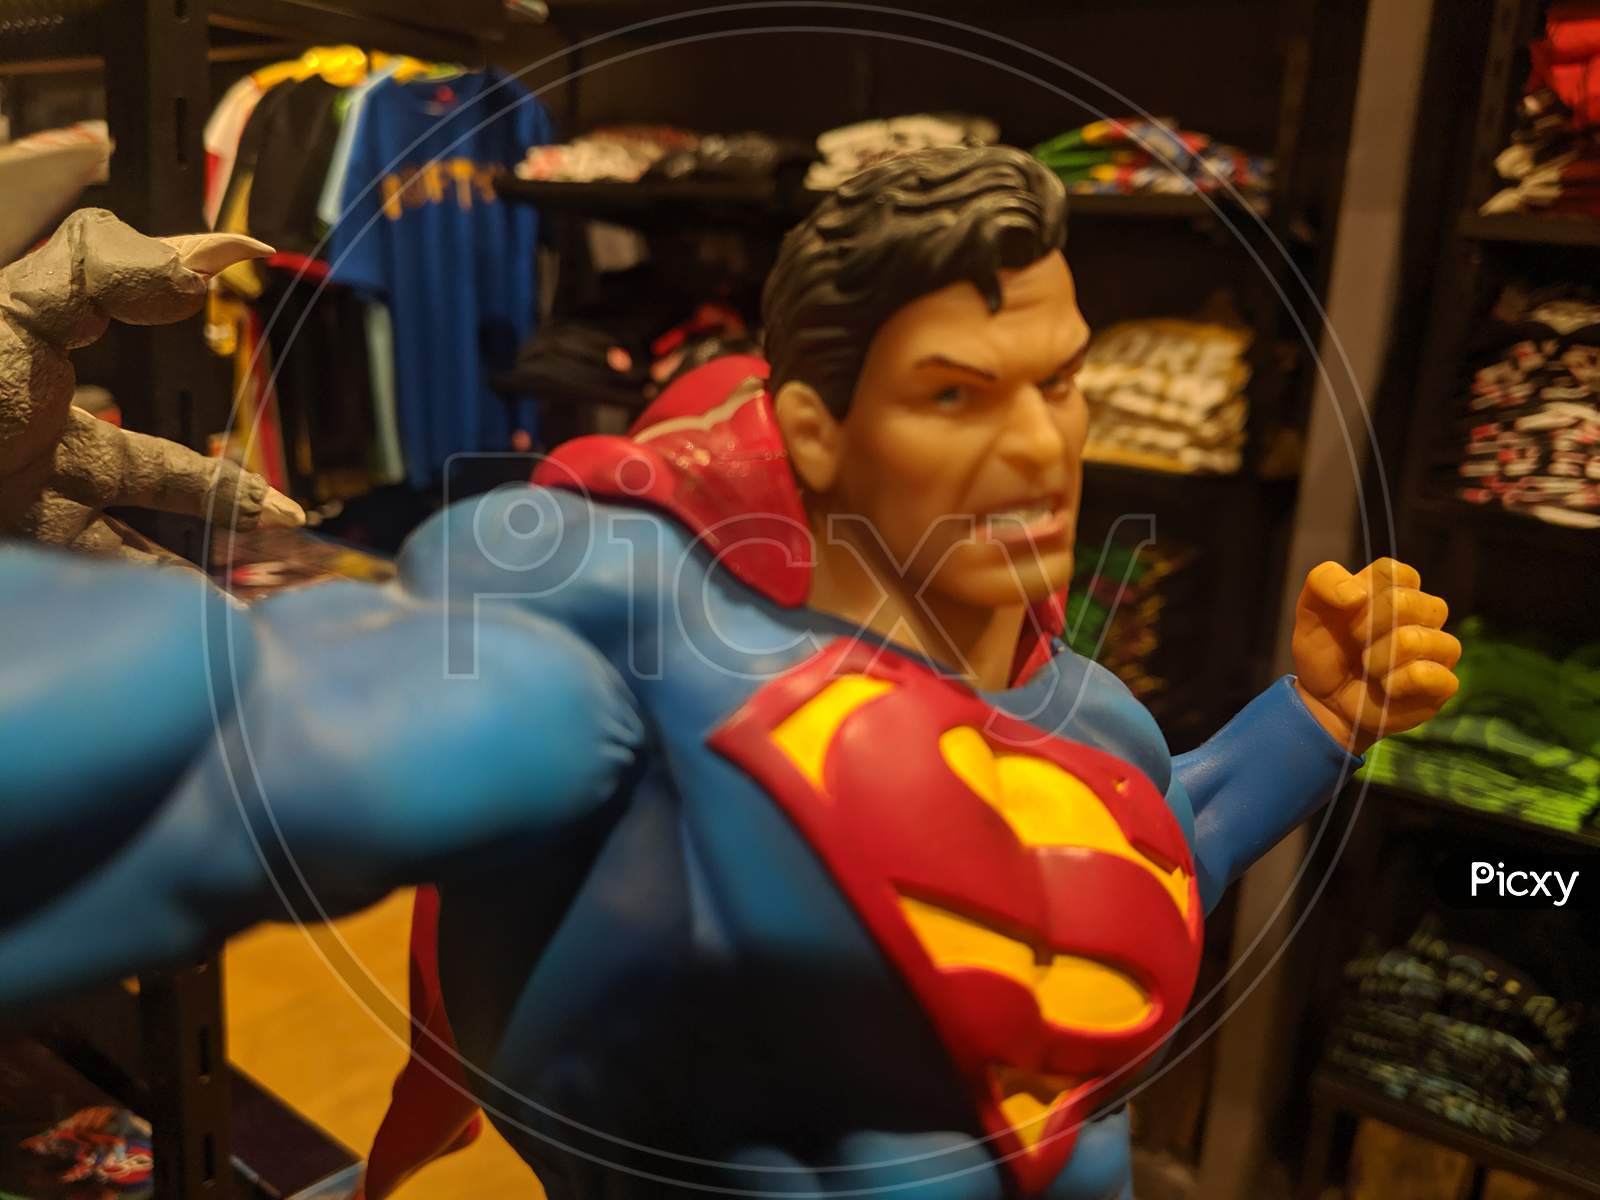 A Super Man figurine